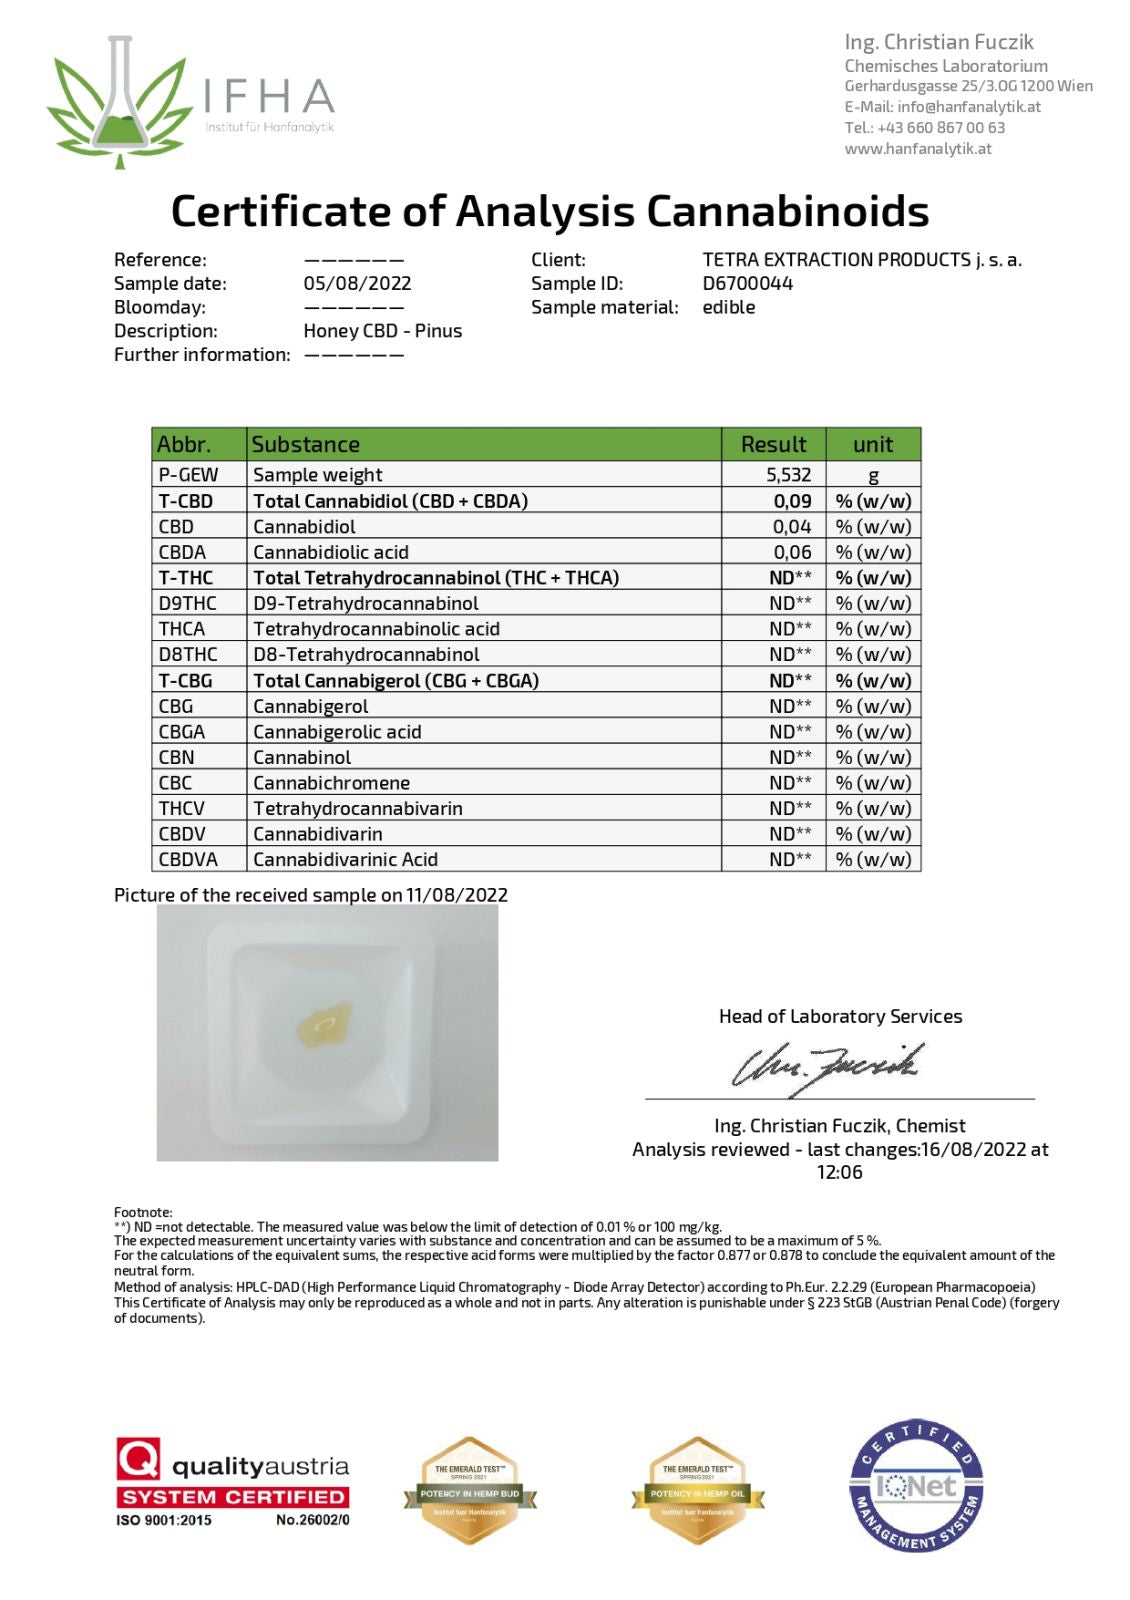 Терапевтичен мед с тетра екстракт (CBD) от борови иглички, 30гр / 220гр